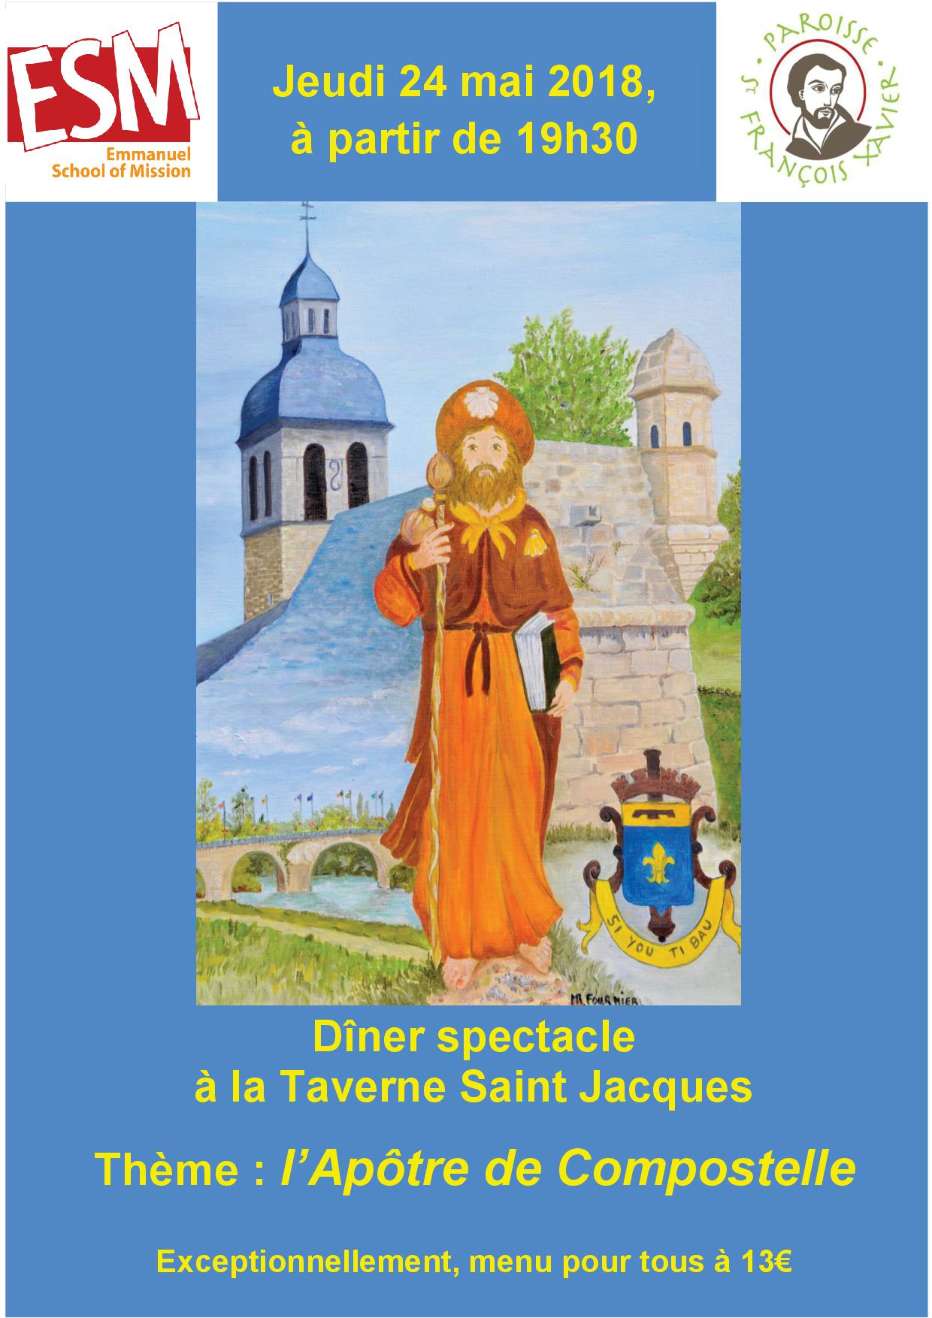 Dîner spectacle jeudi 24 mai à la taverne St Jacques sur "l'Apotre de Compostelle"